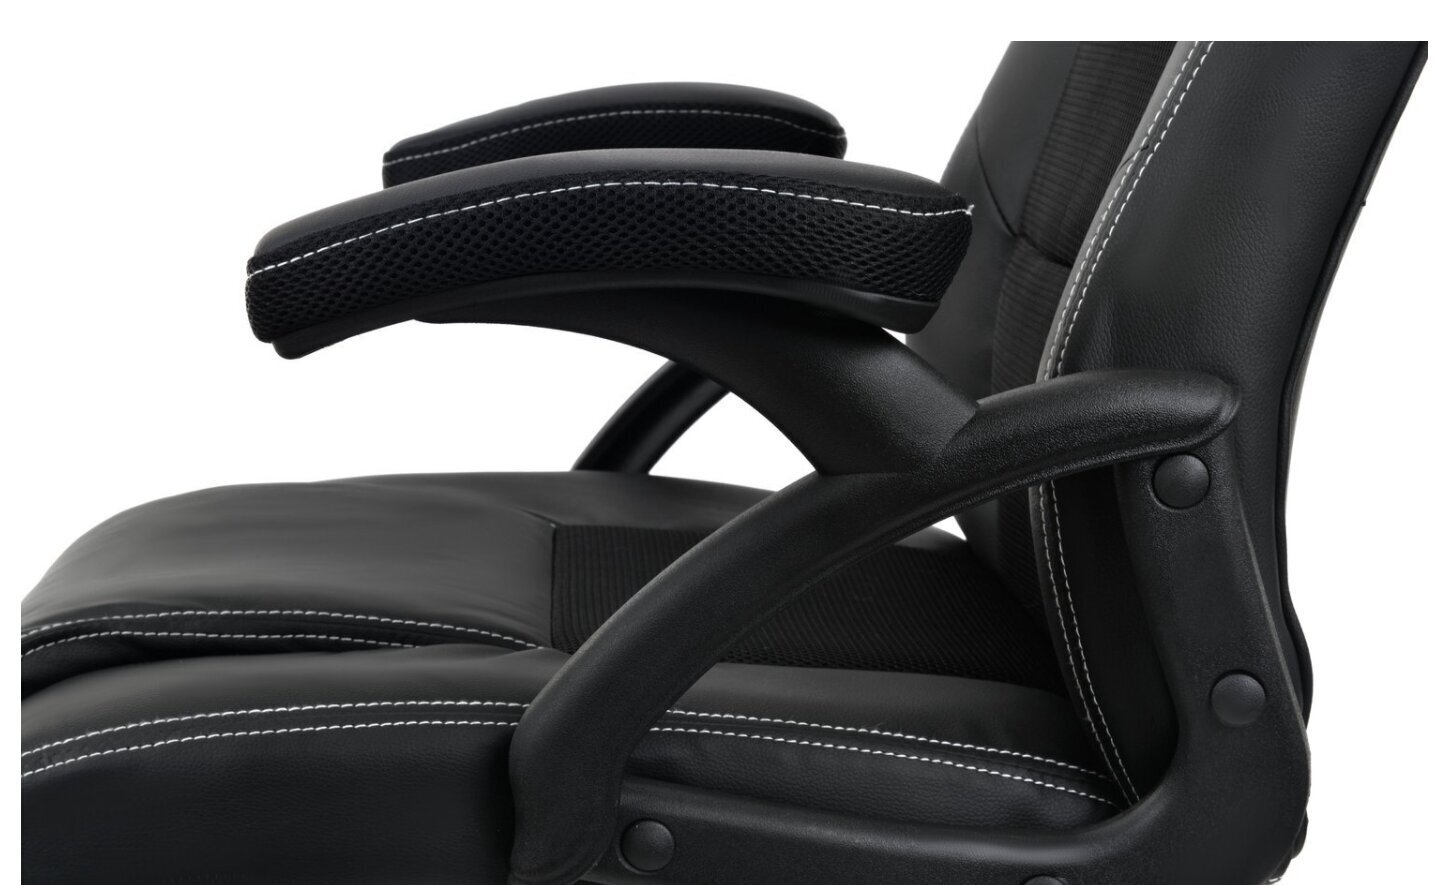 Žaidimų kėde FunFit Home & Office, Racer Pro, juoda kaina ir informacija | Biuro kėdės | pigu.lt